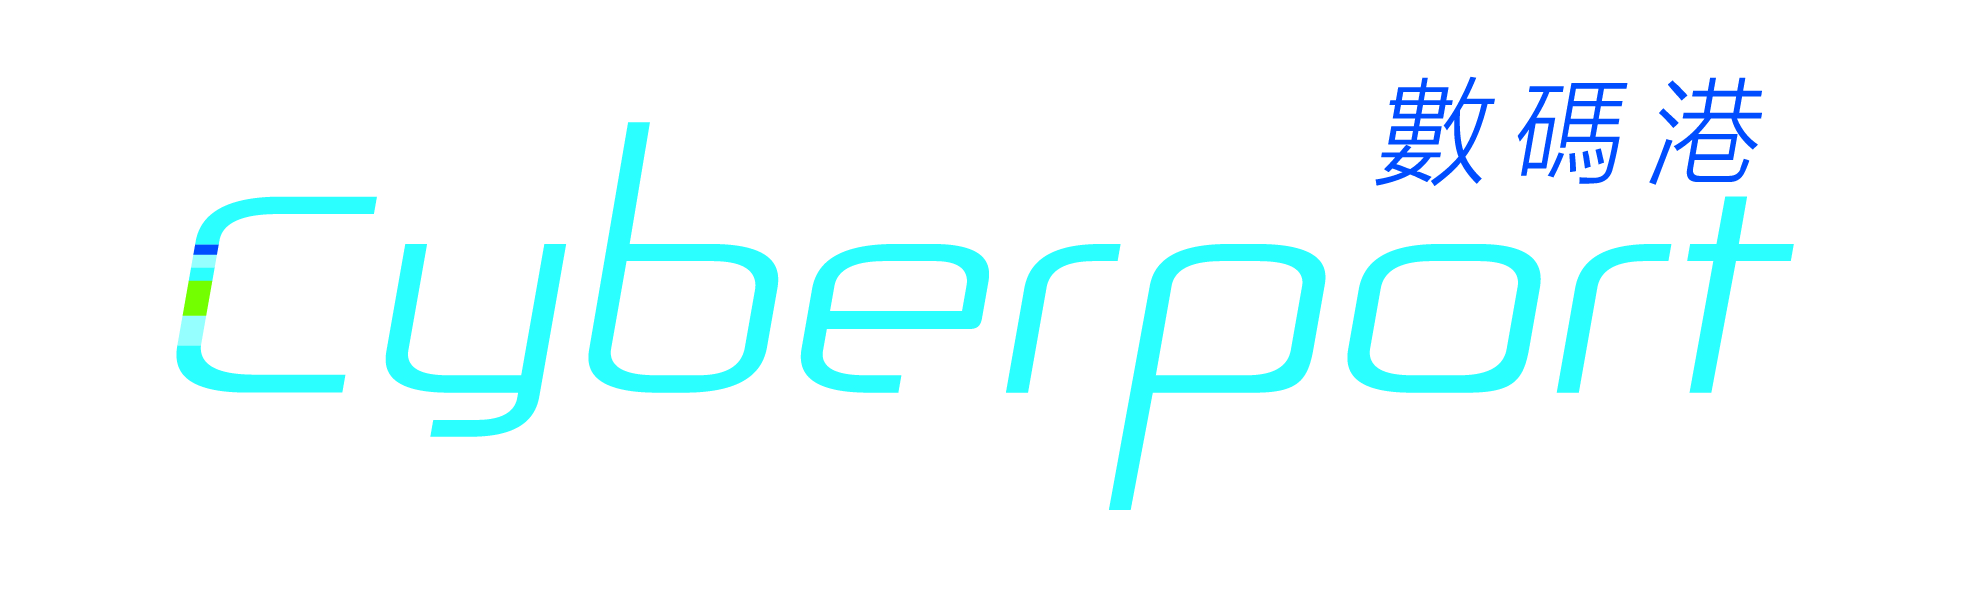 Cyberport_Primary_Logo_CMYK_CS5